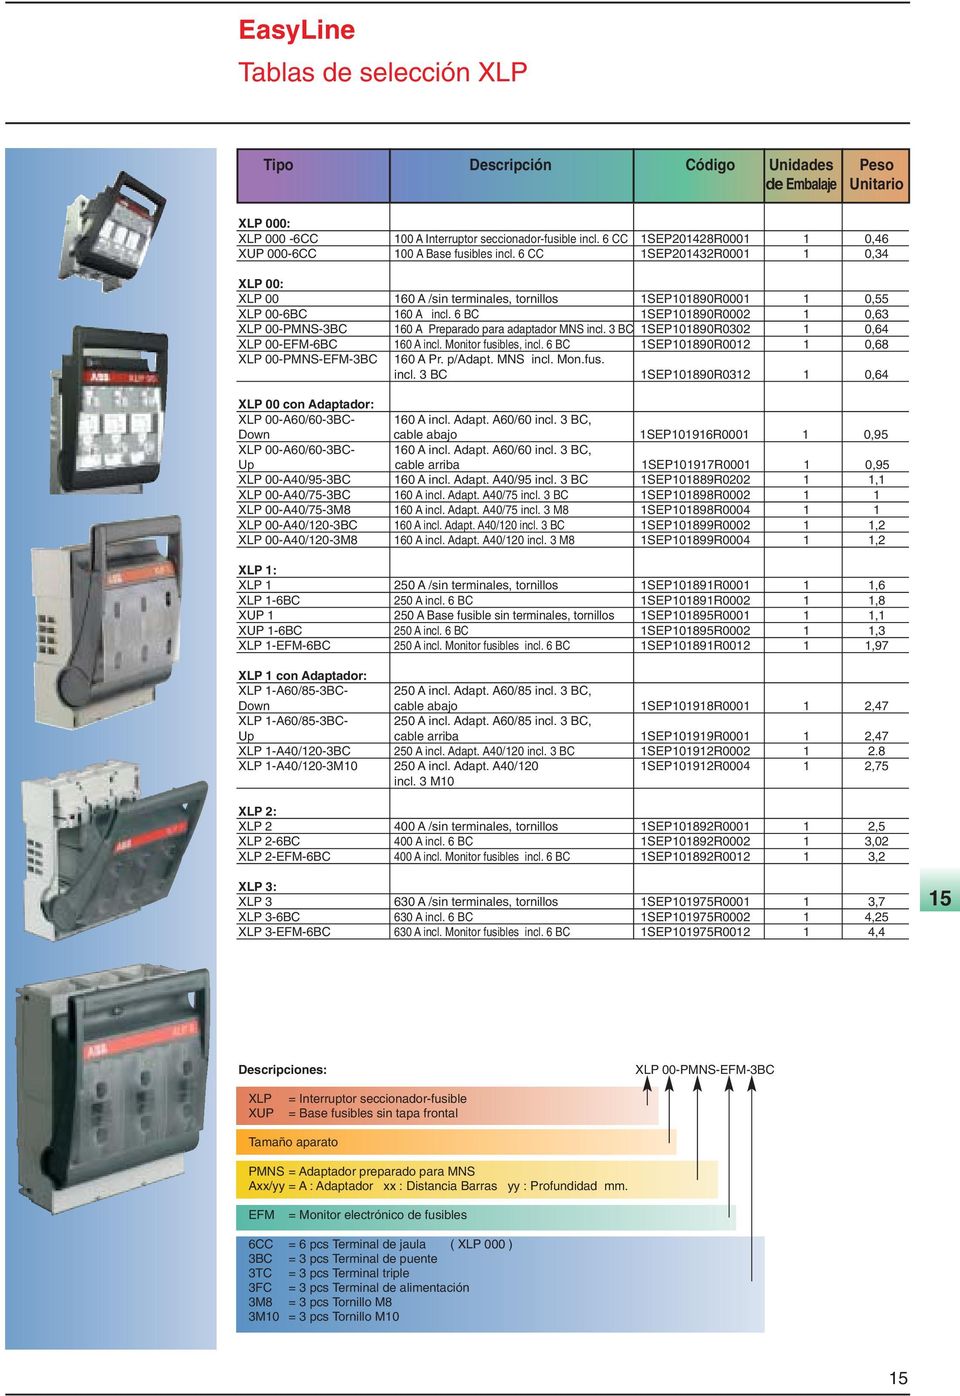 6 BC 1SEP101890R0002 1 0,63 XLP 00-PMNS-3BC 160 A Preparado para adaptador MNS incl. 3 BC 1SEP101890R0302 1 0,64 XLP 00-EFM-6BC 160 A incl. Monitor fusibles, incl.